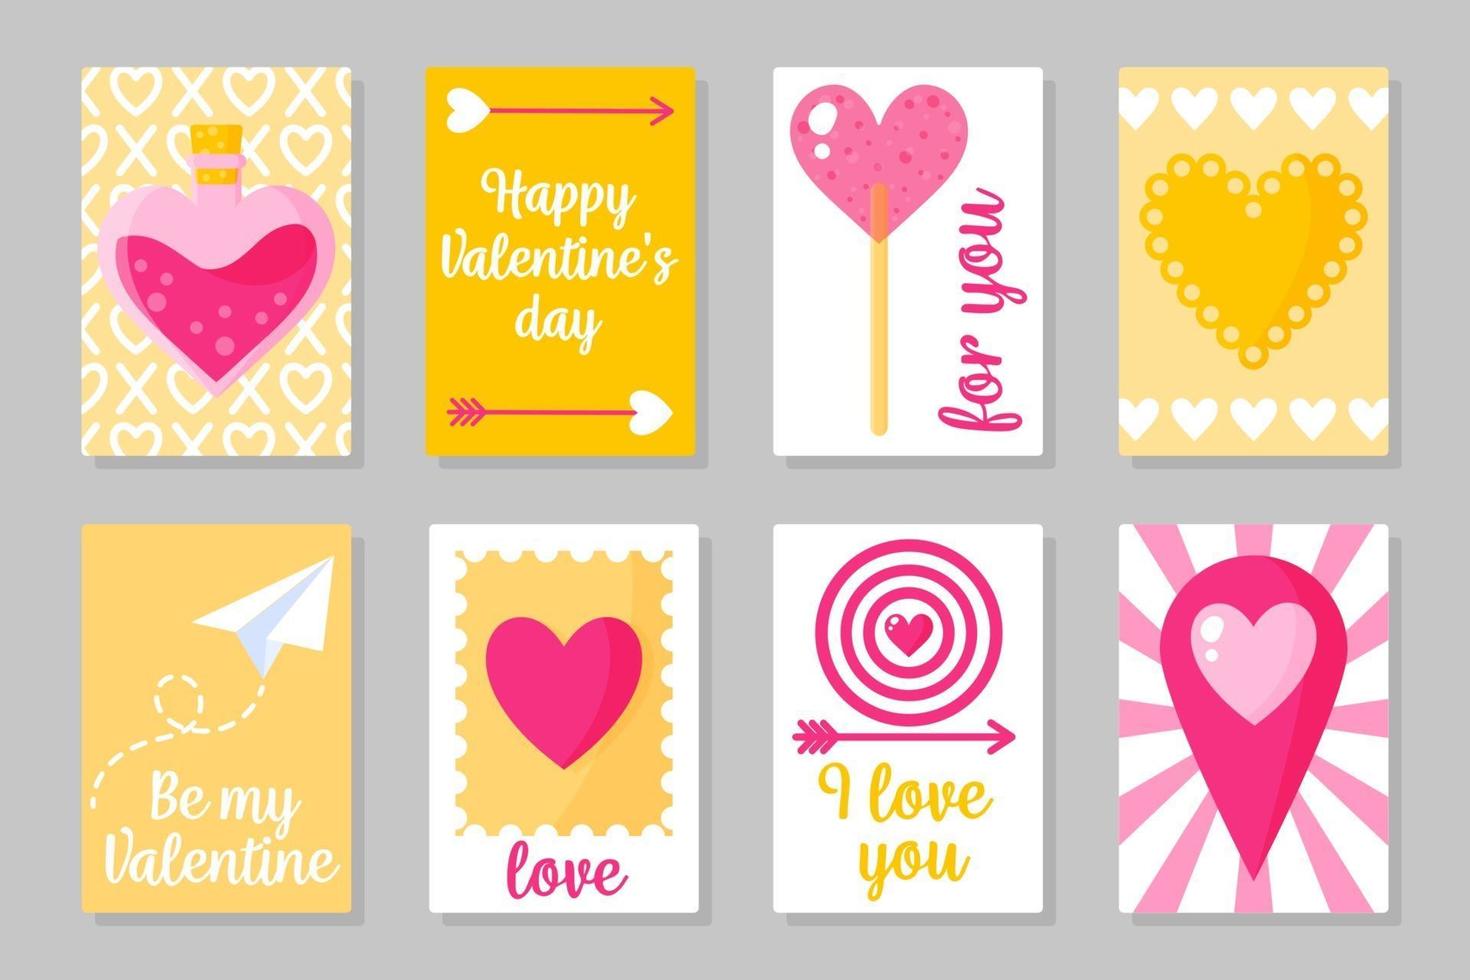 ensemble de cartes colorées roses, blanches et jaunes pour la Saint-Valentin ou le mariage. design plat isolé de vecteur